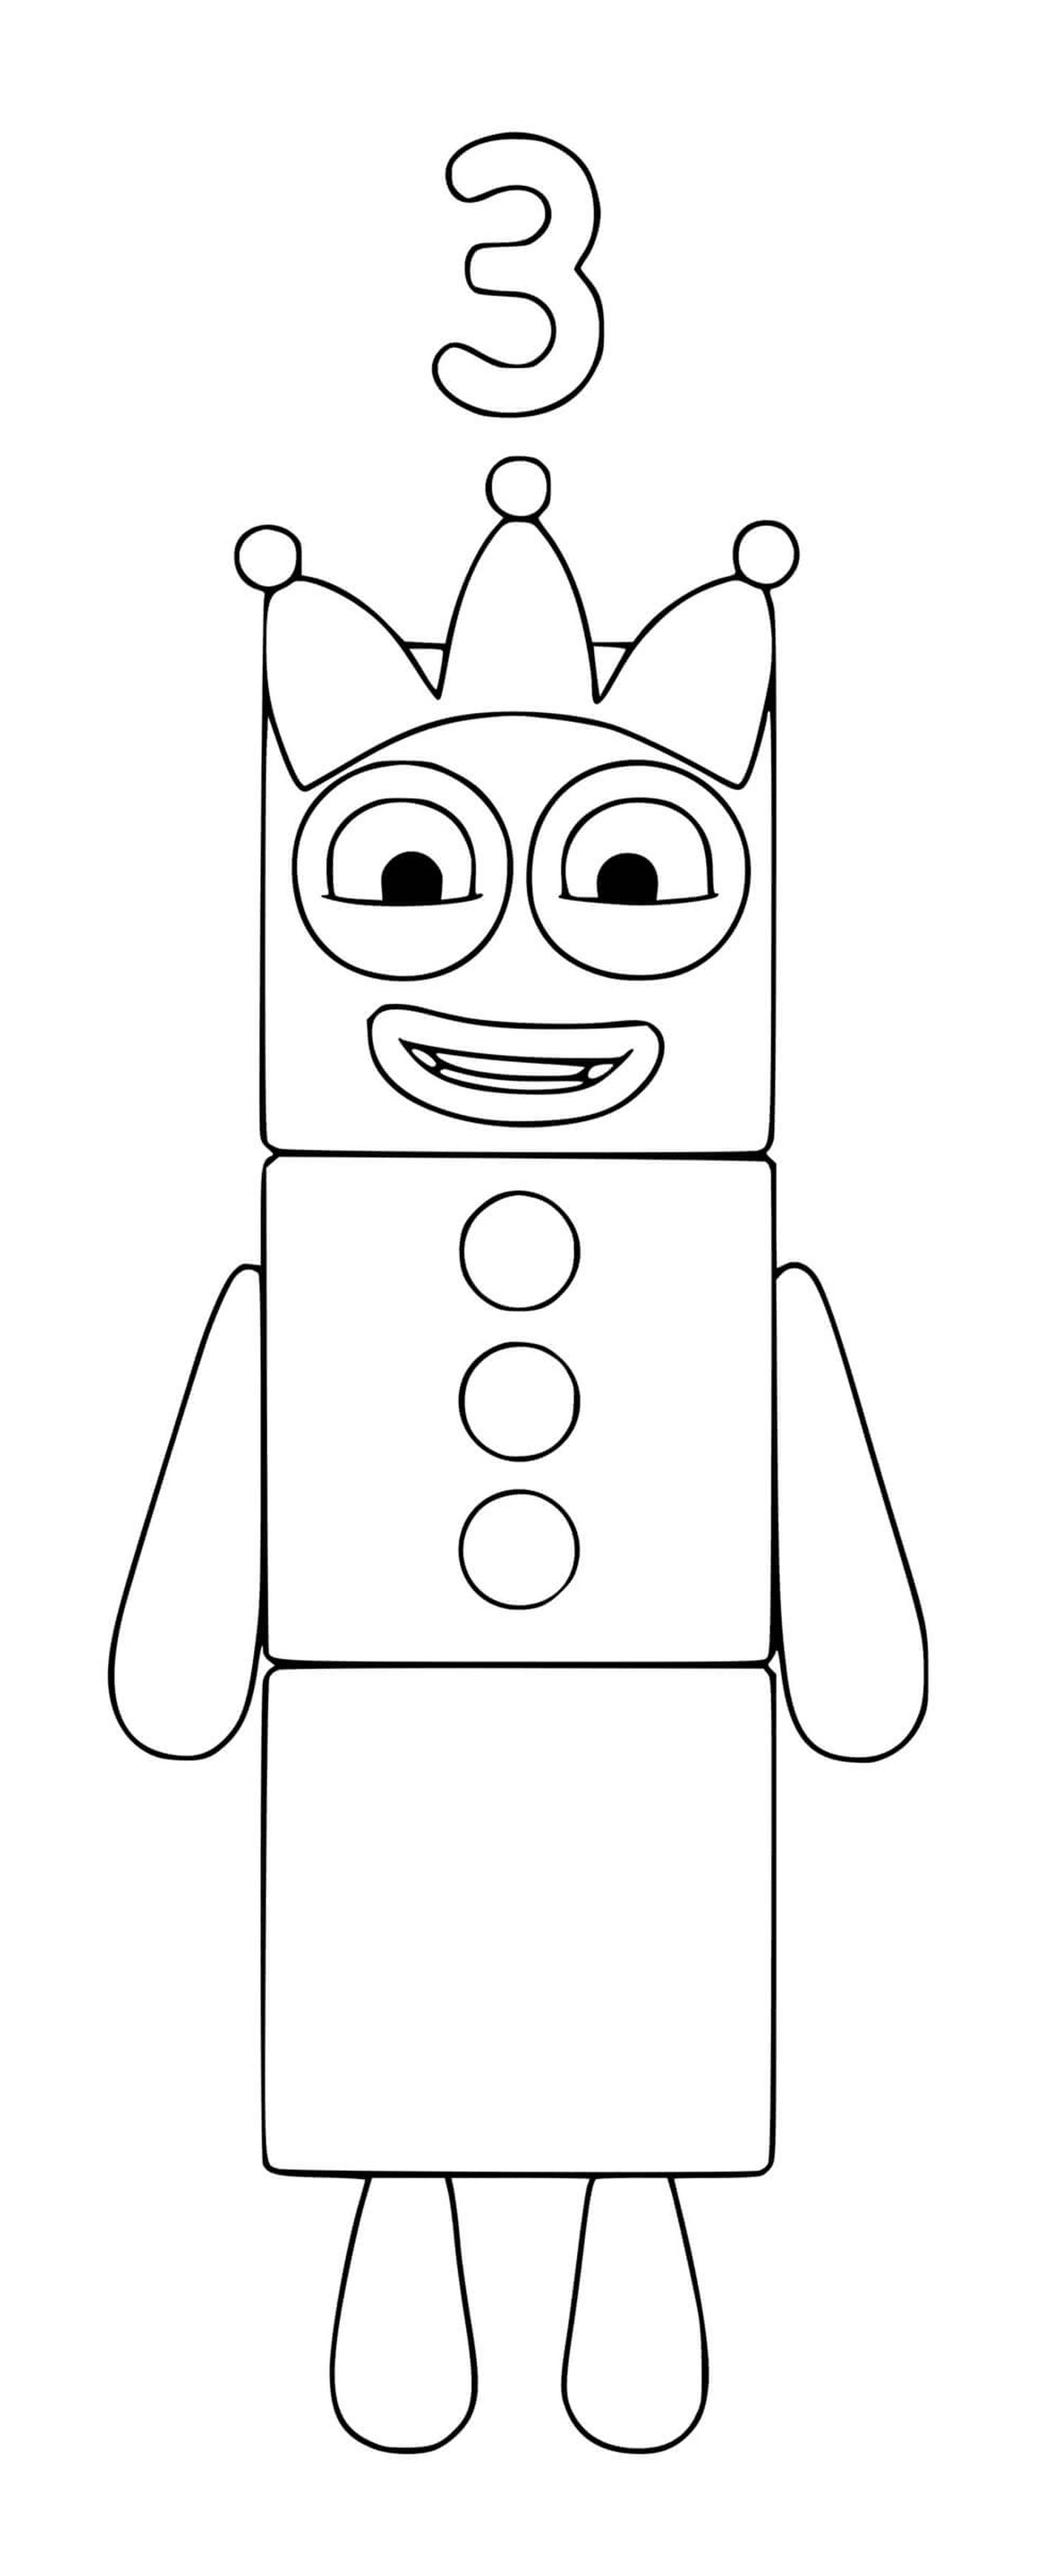  Numberblocks Nummer 3, ein Spielzeugroboter 